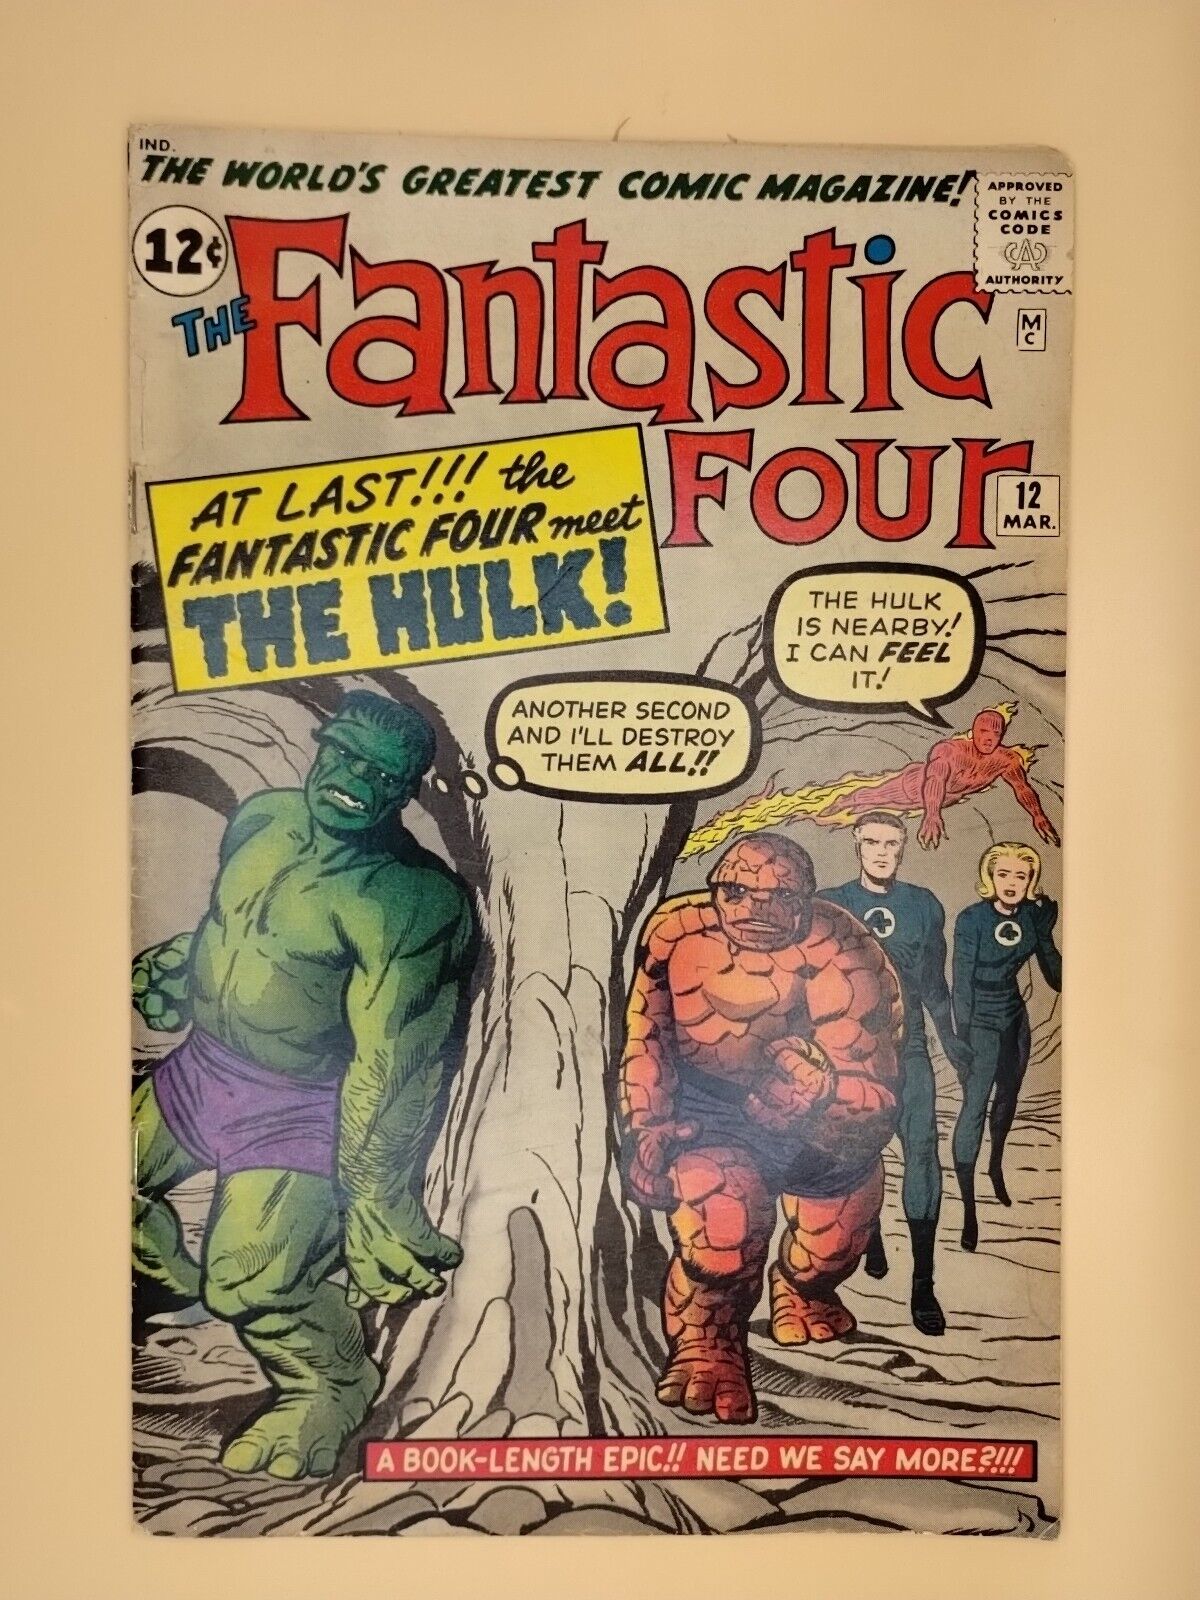 The Fantastic Four #12